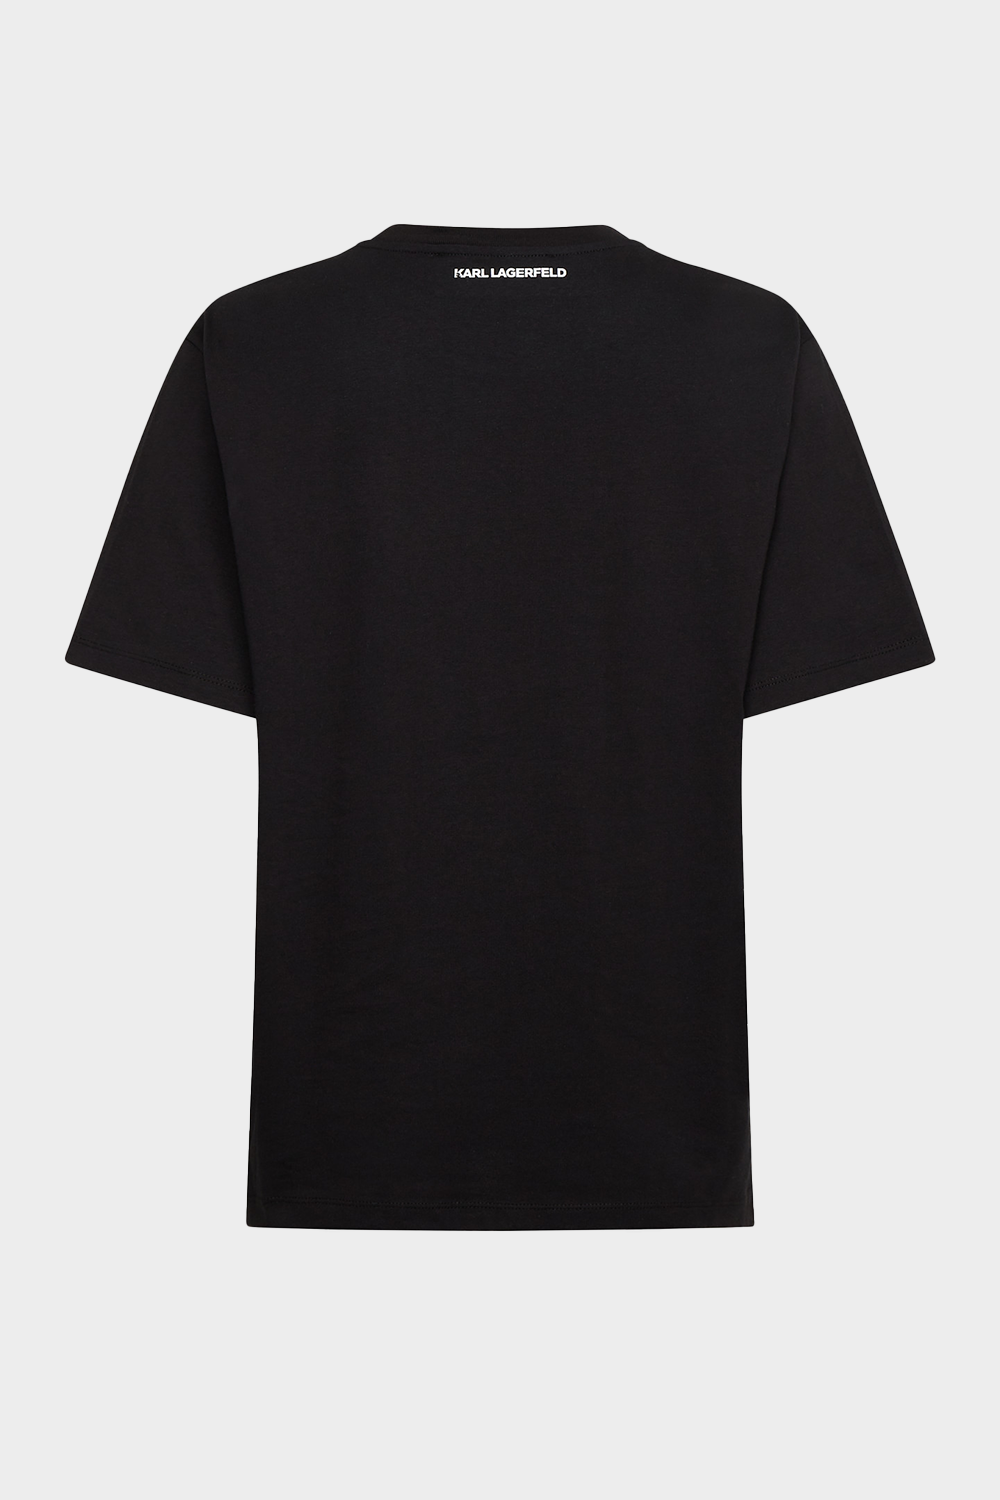 חולצת טי שירט לנשים בצבע שחור KARL LAGERFELD Vendome online | ונדום .